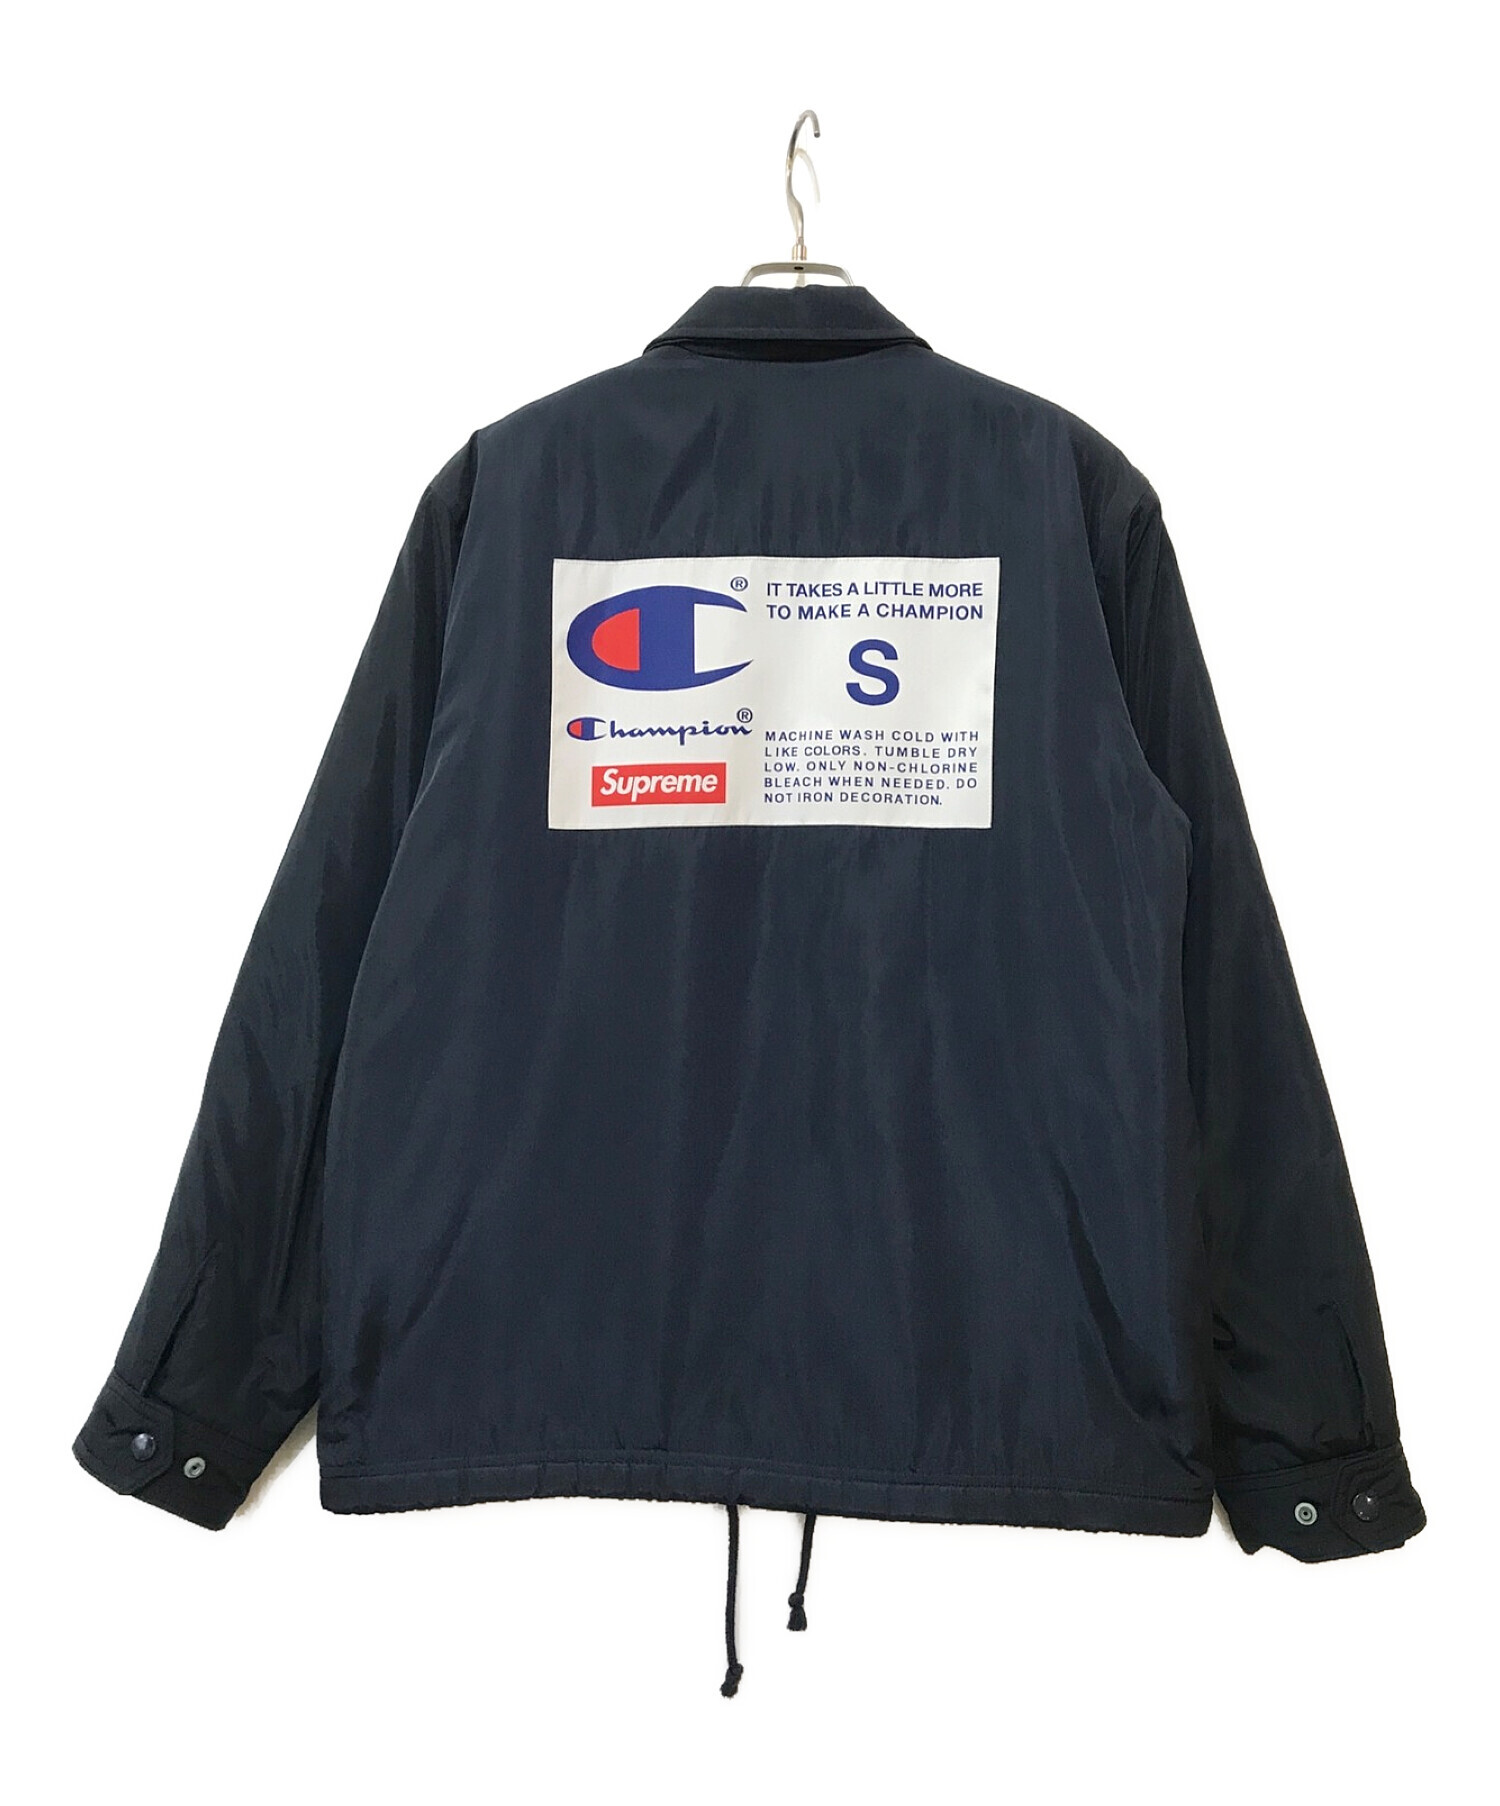 SUPREME (シュプリーム) Champion (チャンピオンリバースウィーブ) Label Coaches Jacket ネイビー サイズ:S